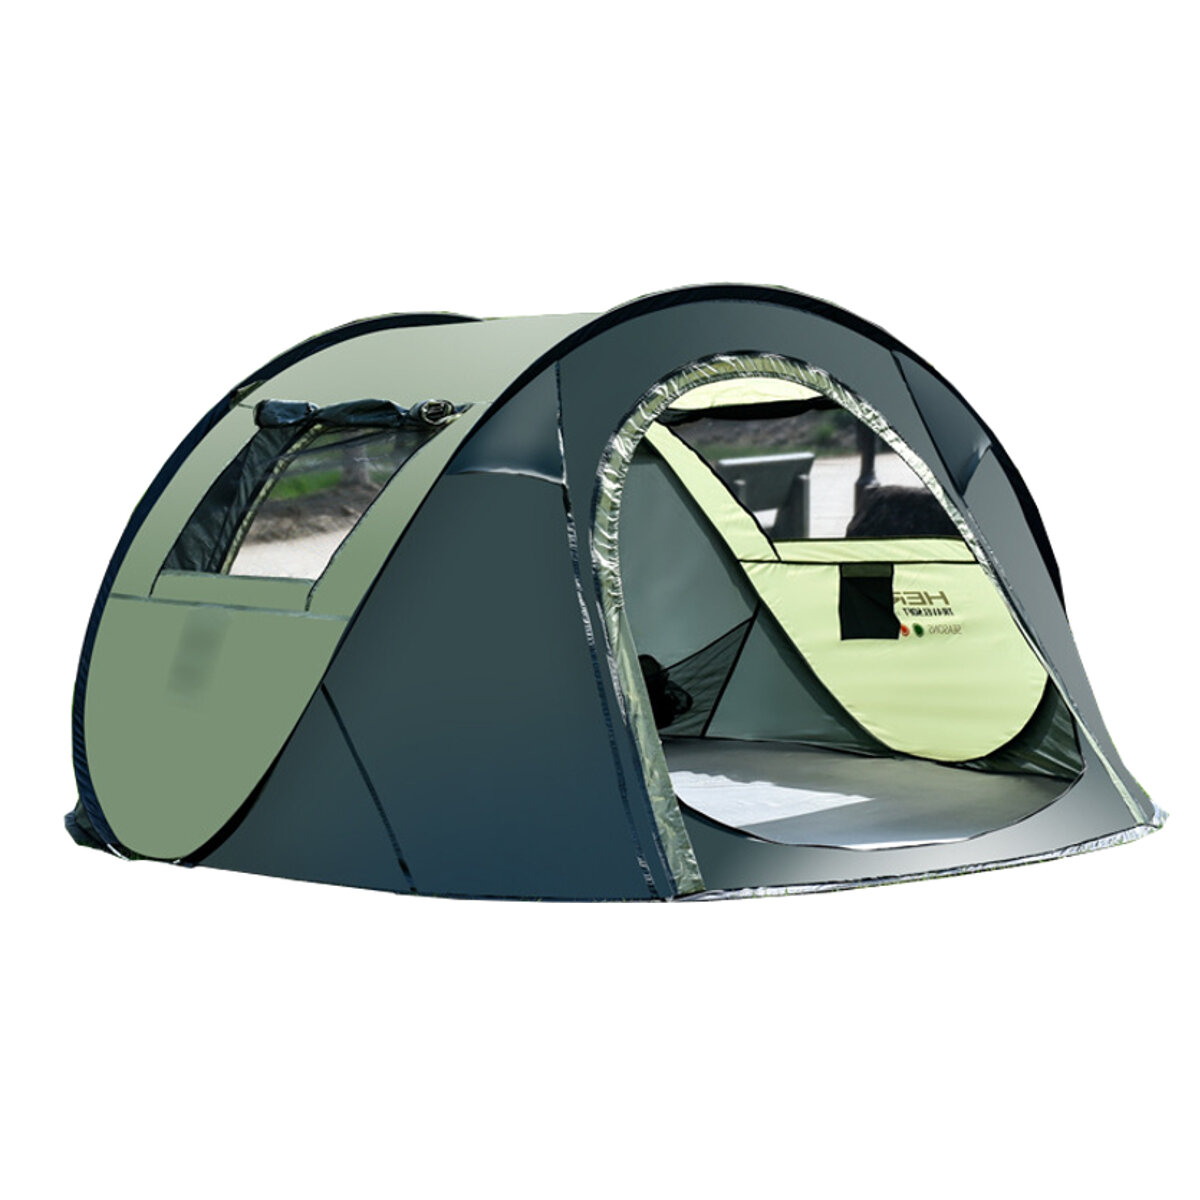 Tenda de camping impermeável para 5-8 pessoas, tenda automática de alta velocidade para viagens e caminhadas ao ar livre - café/verde